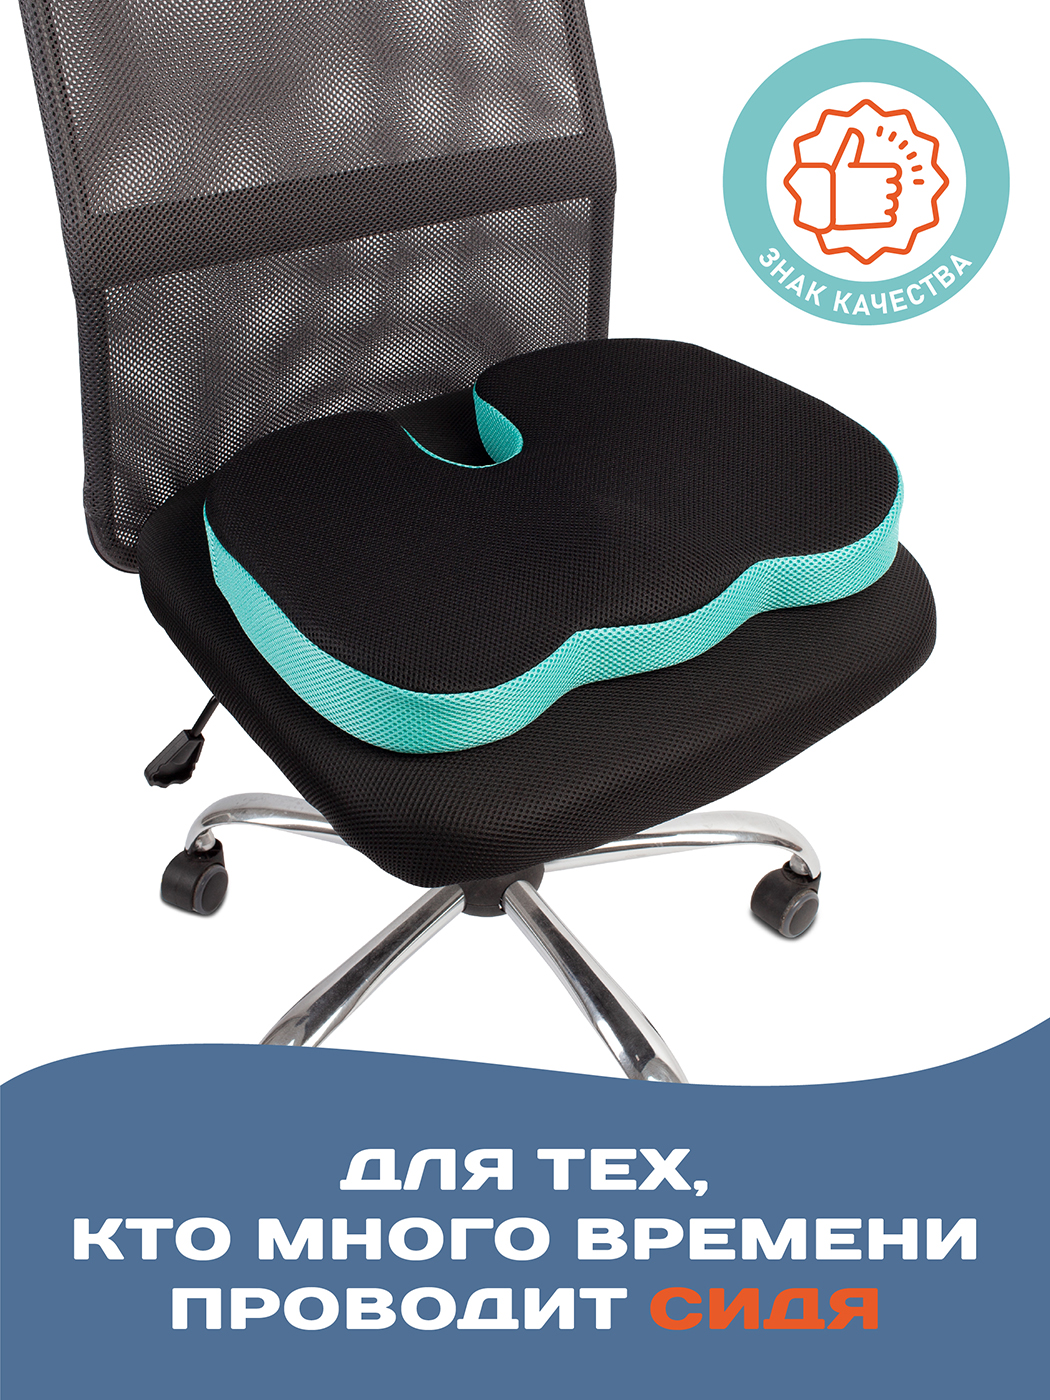 Ортопедическая подушка под поясницу для спины на стул, офисное кресло .